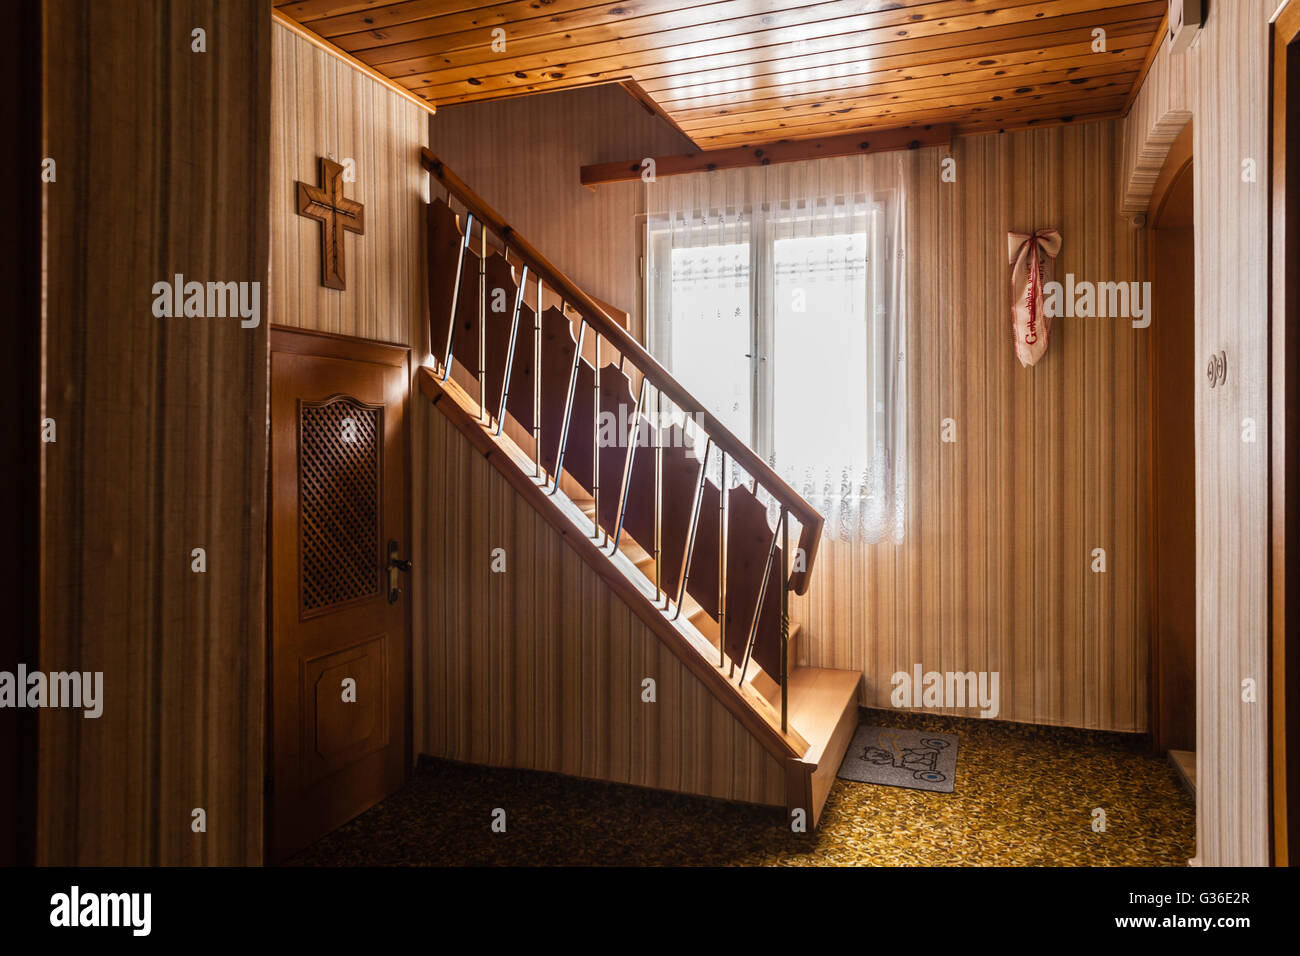 L'intérieur d'une maison autrichienne avec de vieux meubles rétro prêt pour rénovation Banque D'Images